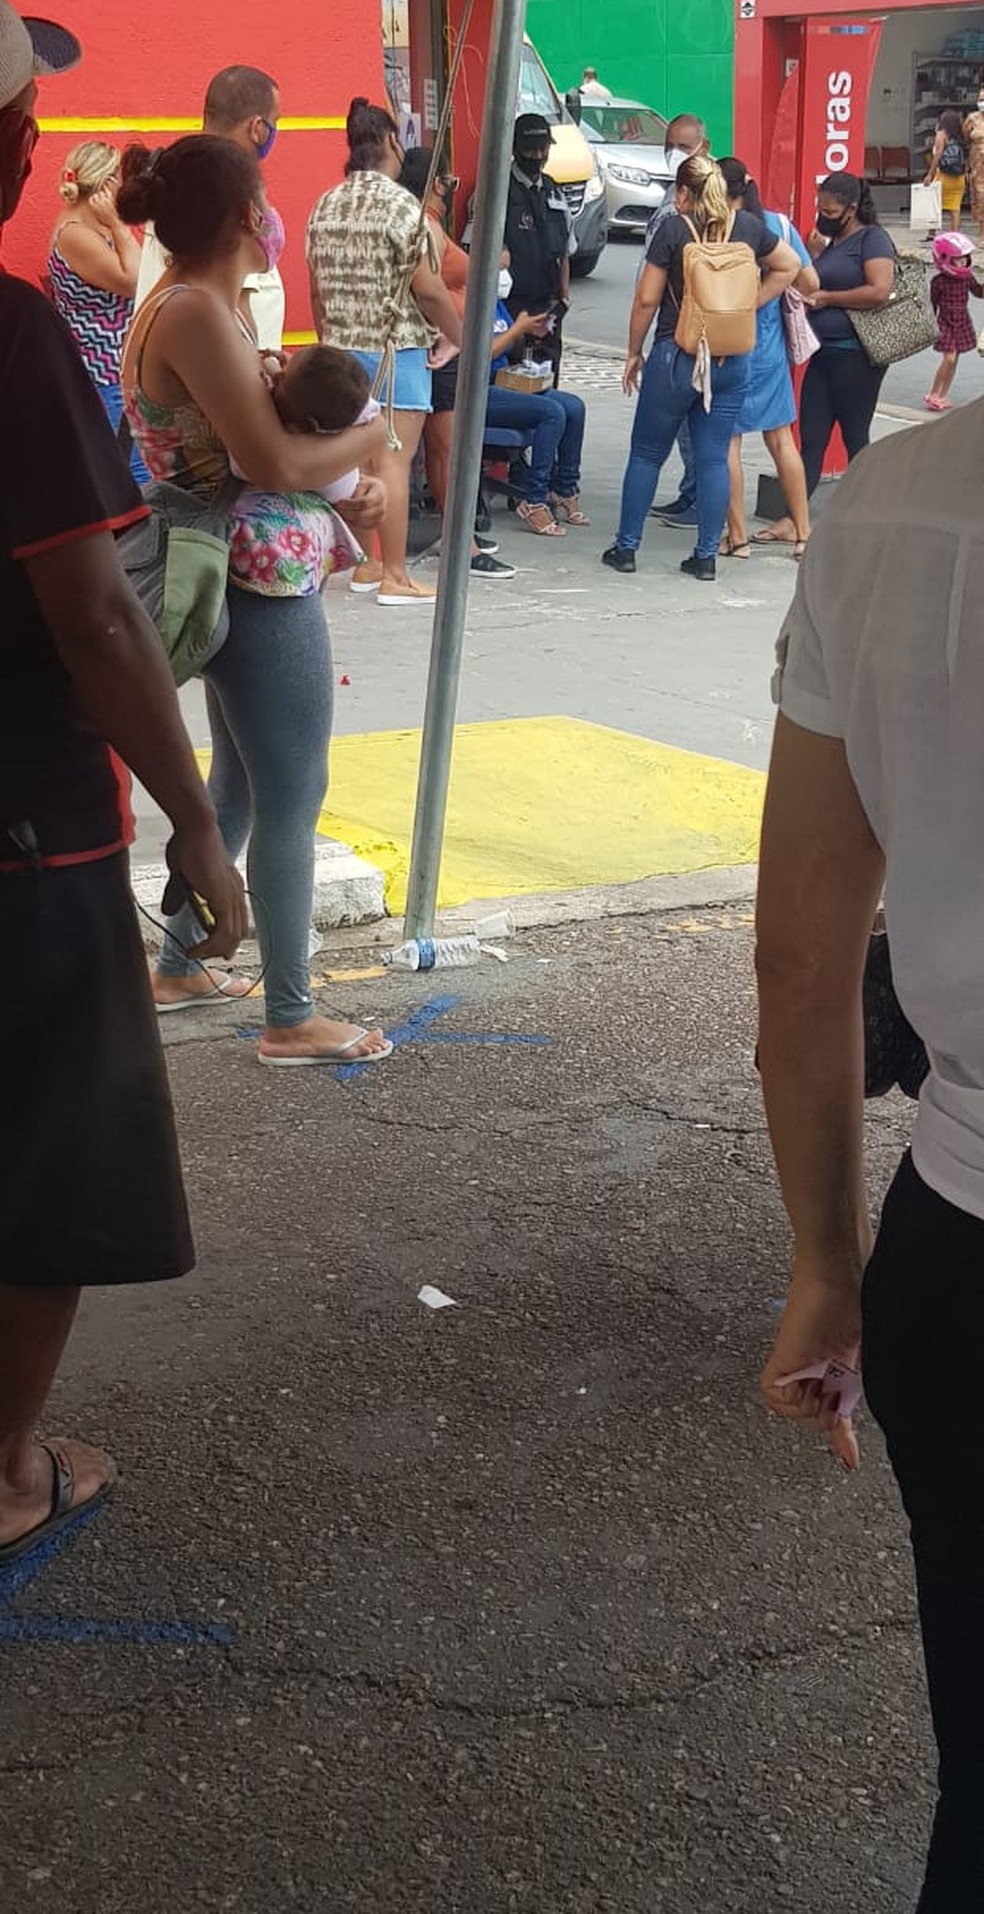 Idosos e mulheres com criança de colo esperam em fila do lado de fora da agência — Foto: Divulgação